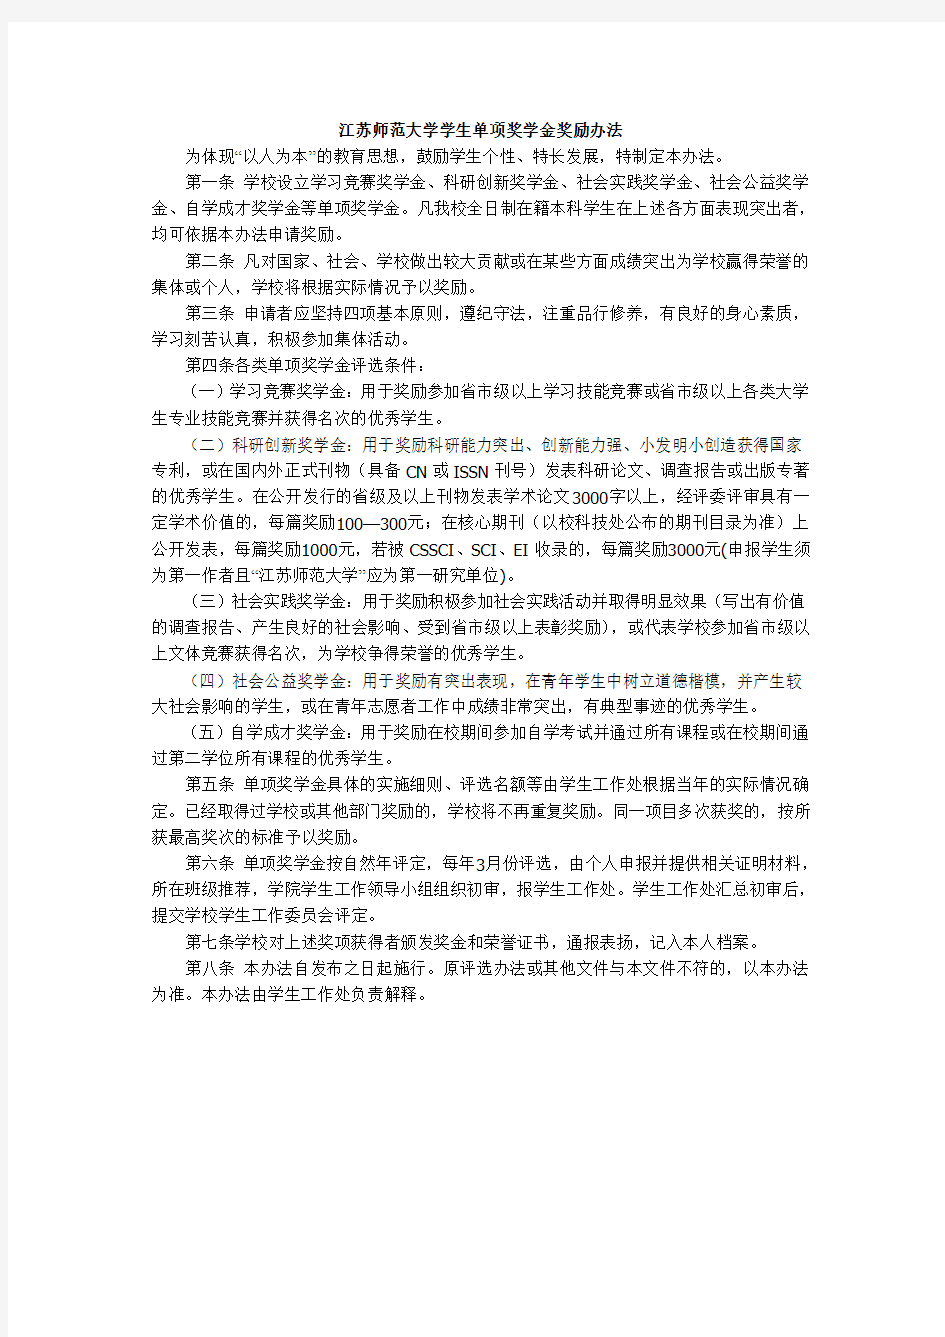 江苏师范大学学生单项奖学金奖励办法(2012年修订)